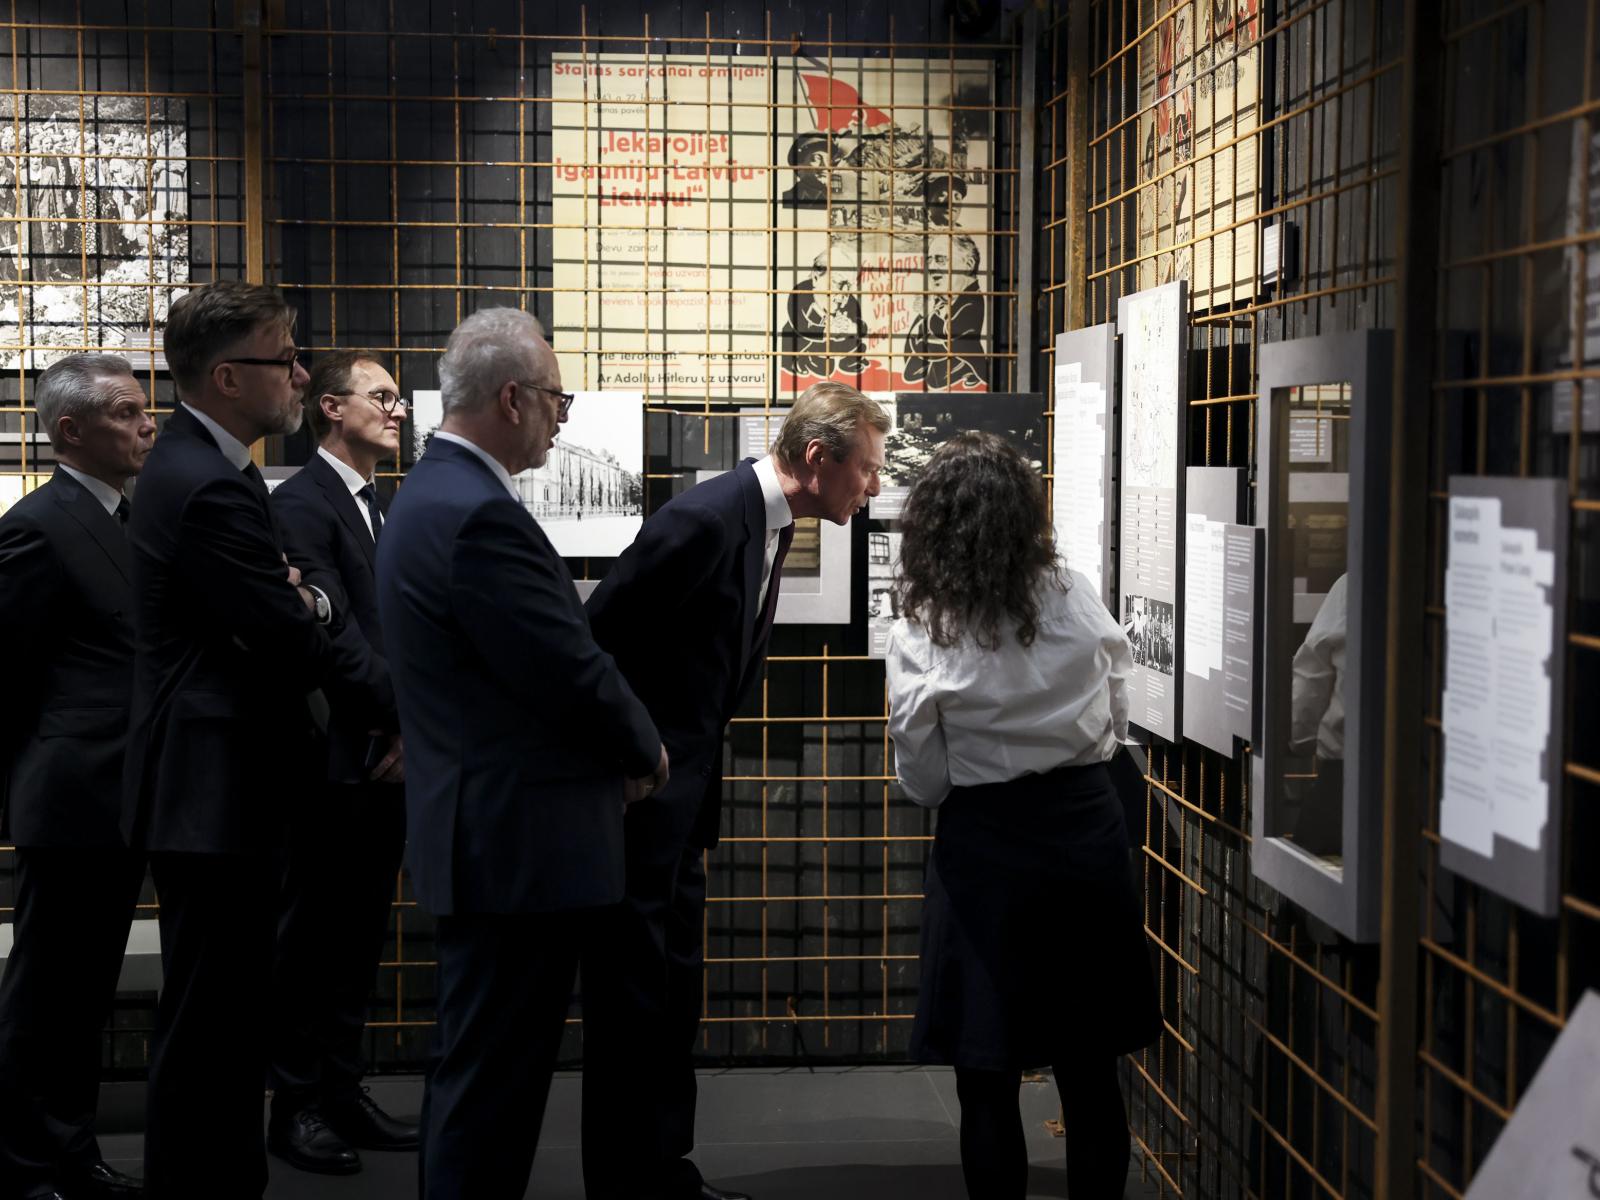 Le Grand-Duc reçoit des explications sur un exposition